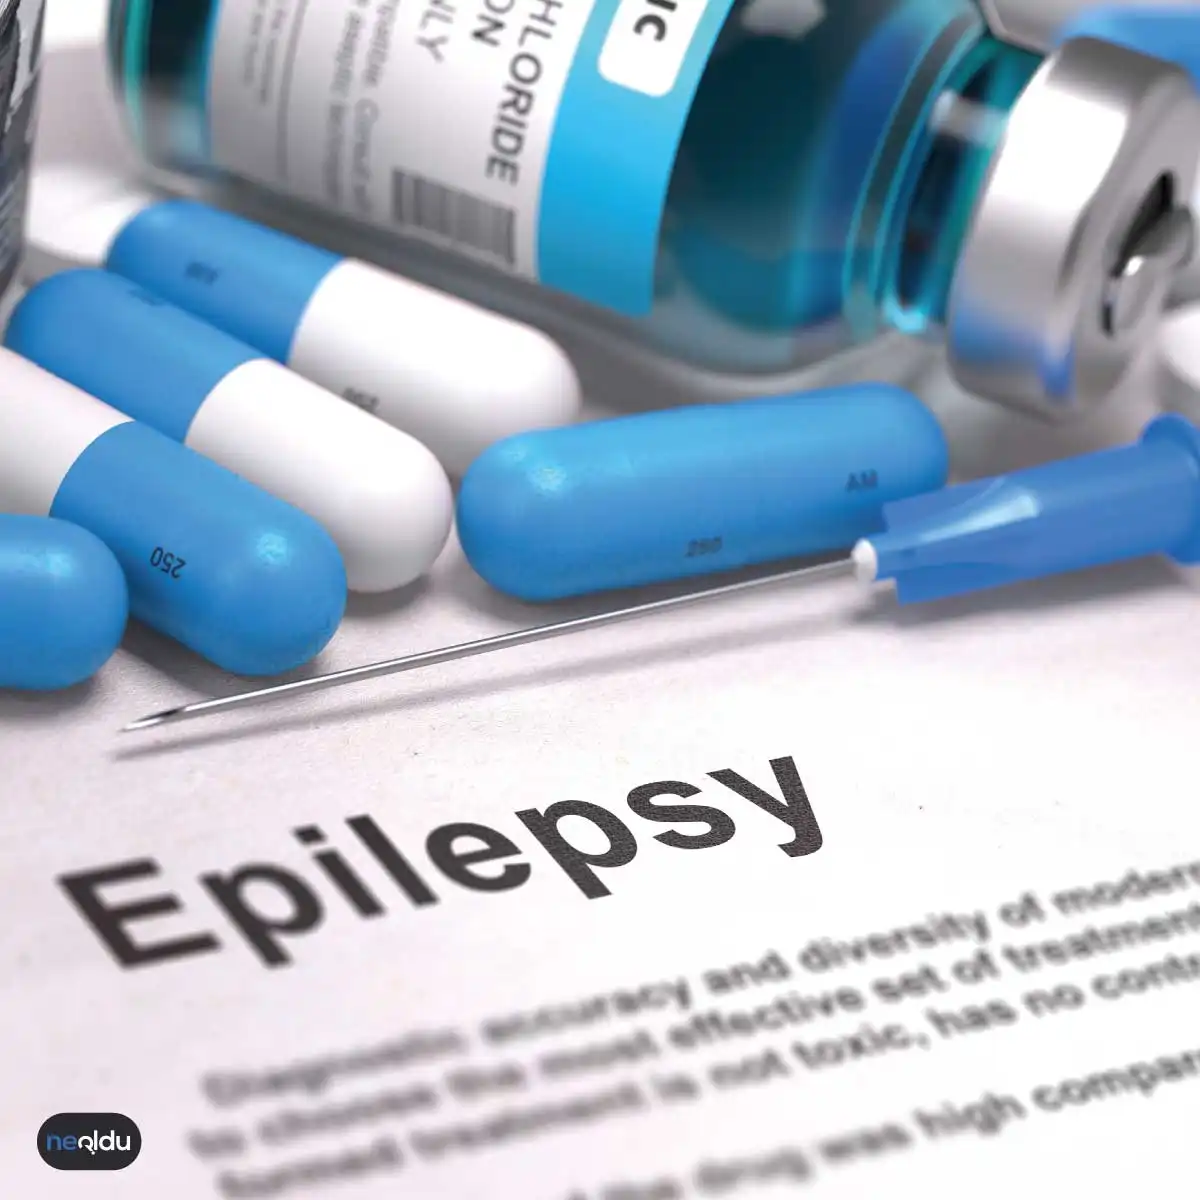 Epilepsi 